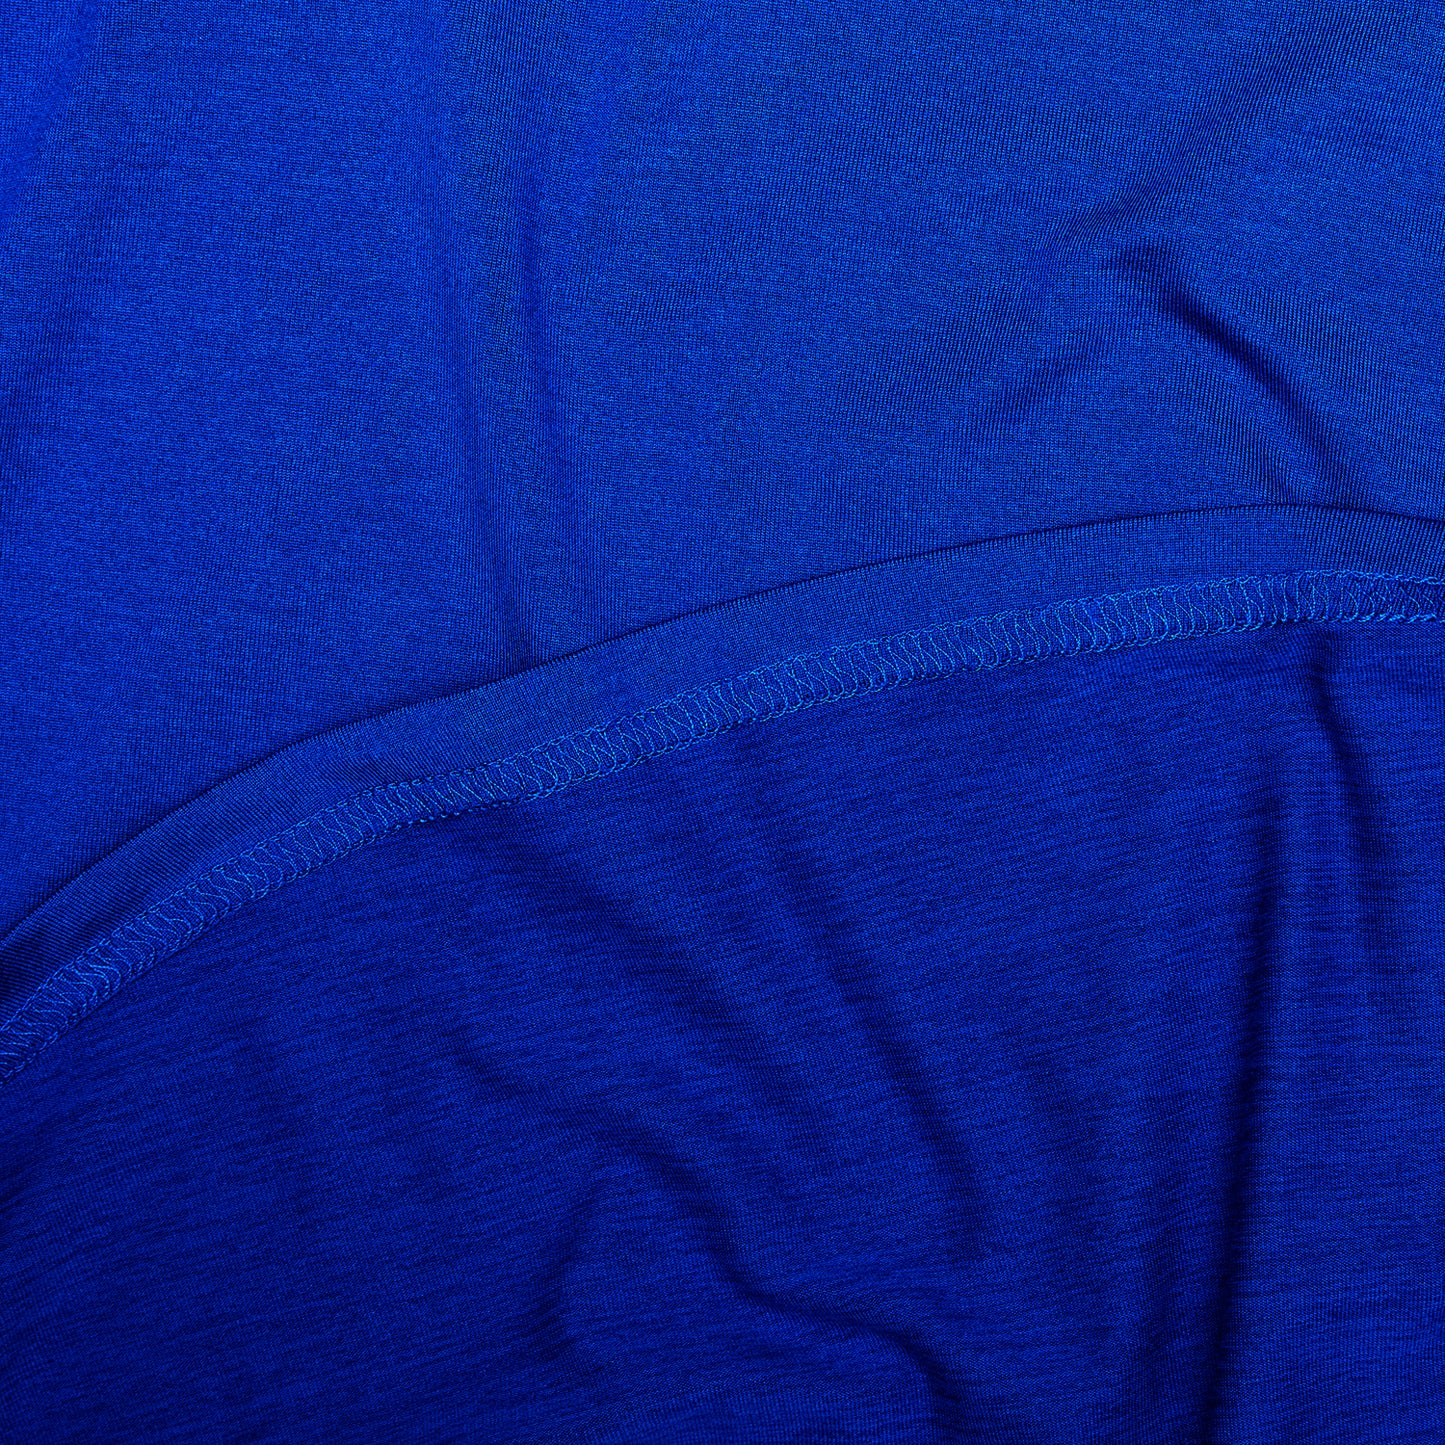 ランニングTシャツ LMRSS20c2004 Logo Pace T-shirt - Blue [メンズ]